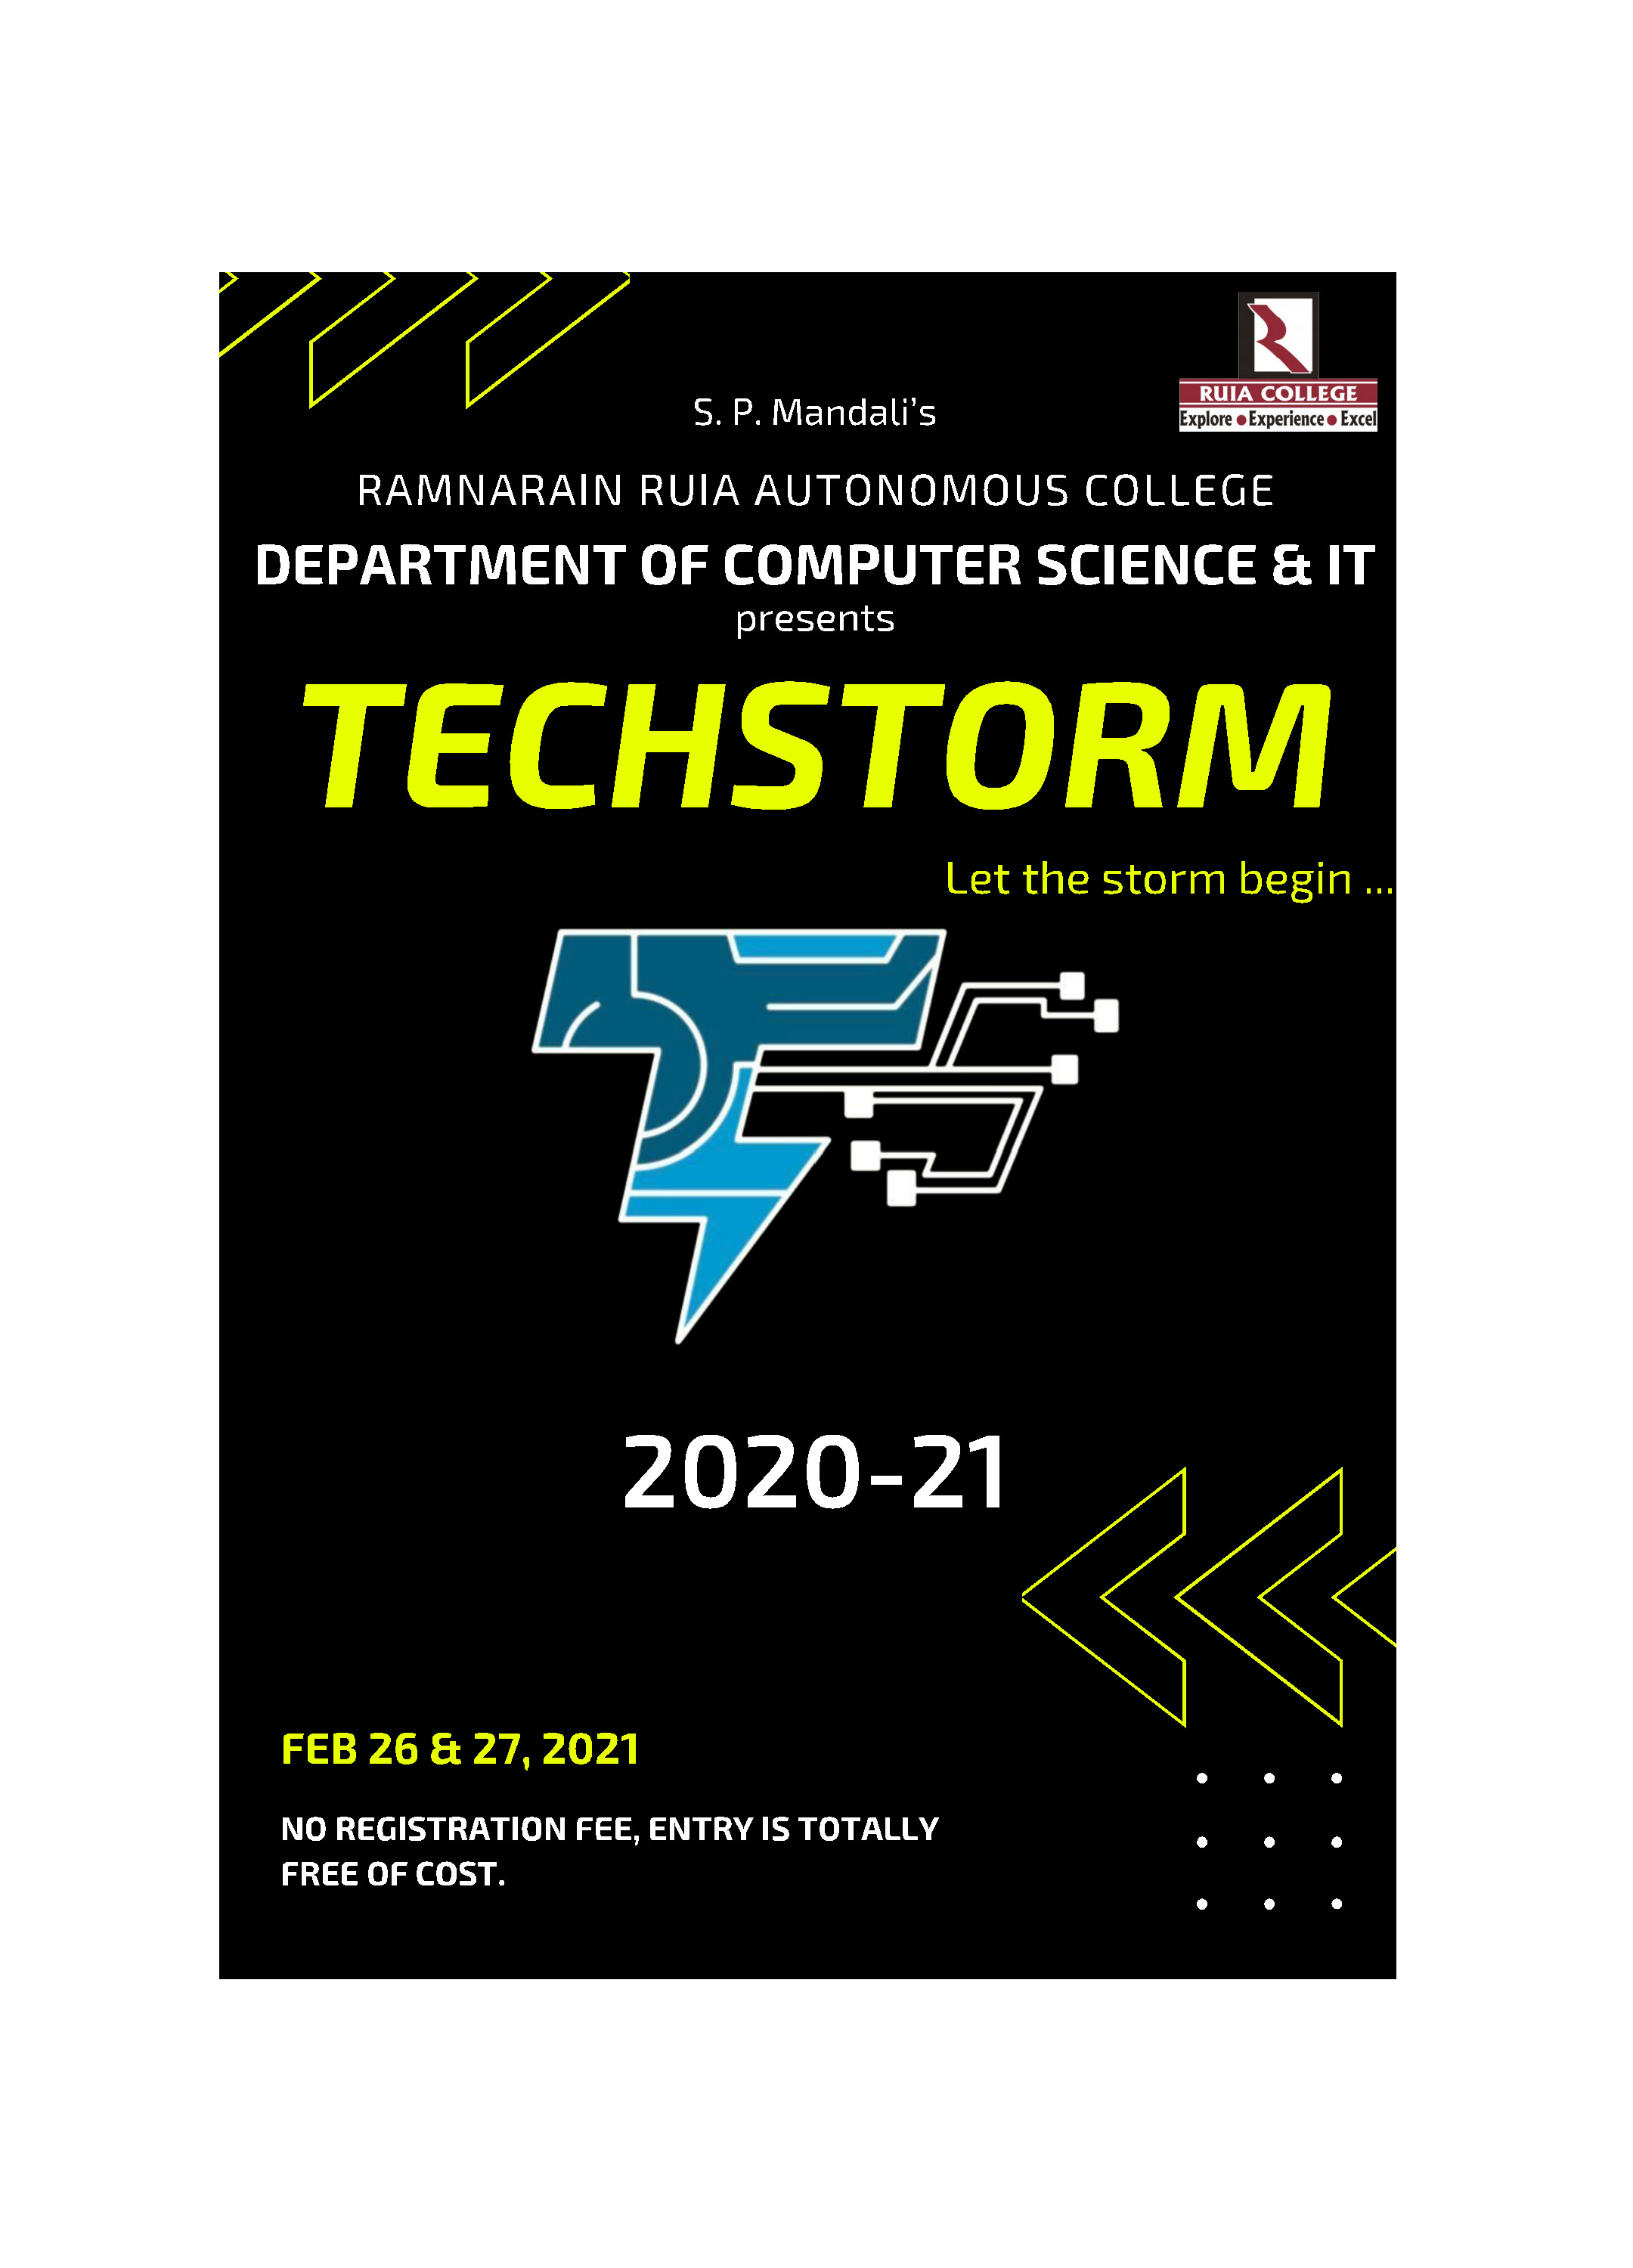 Techstorm 2021 